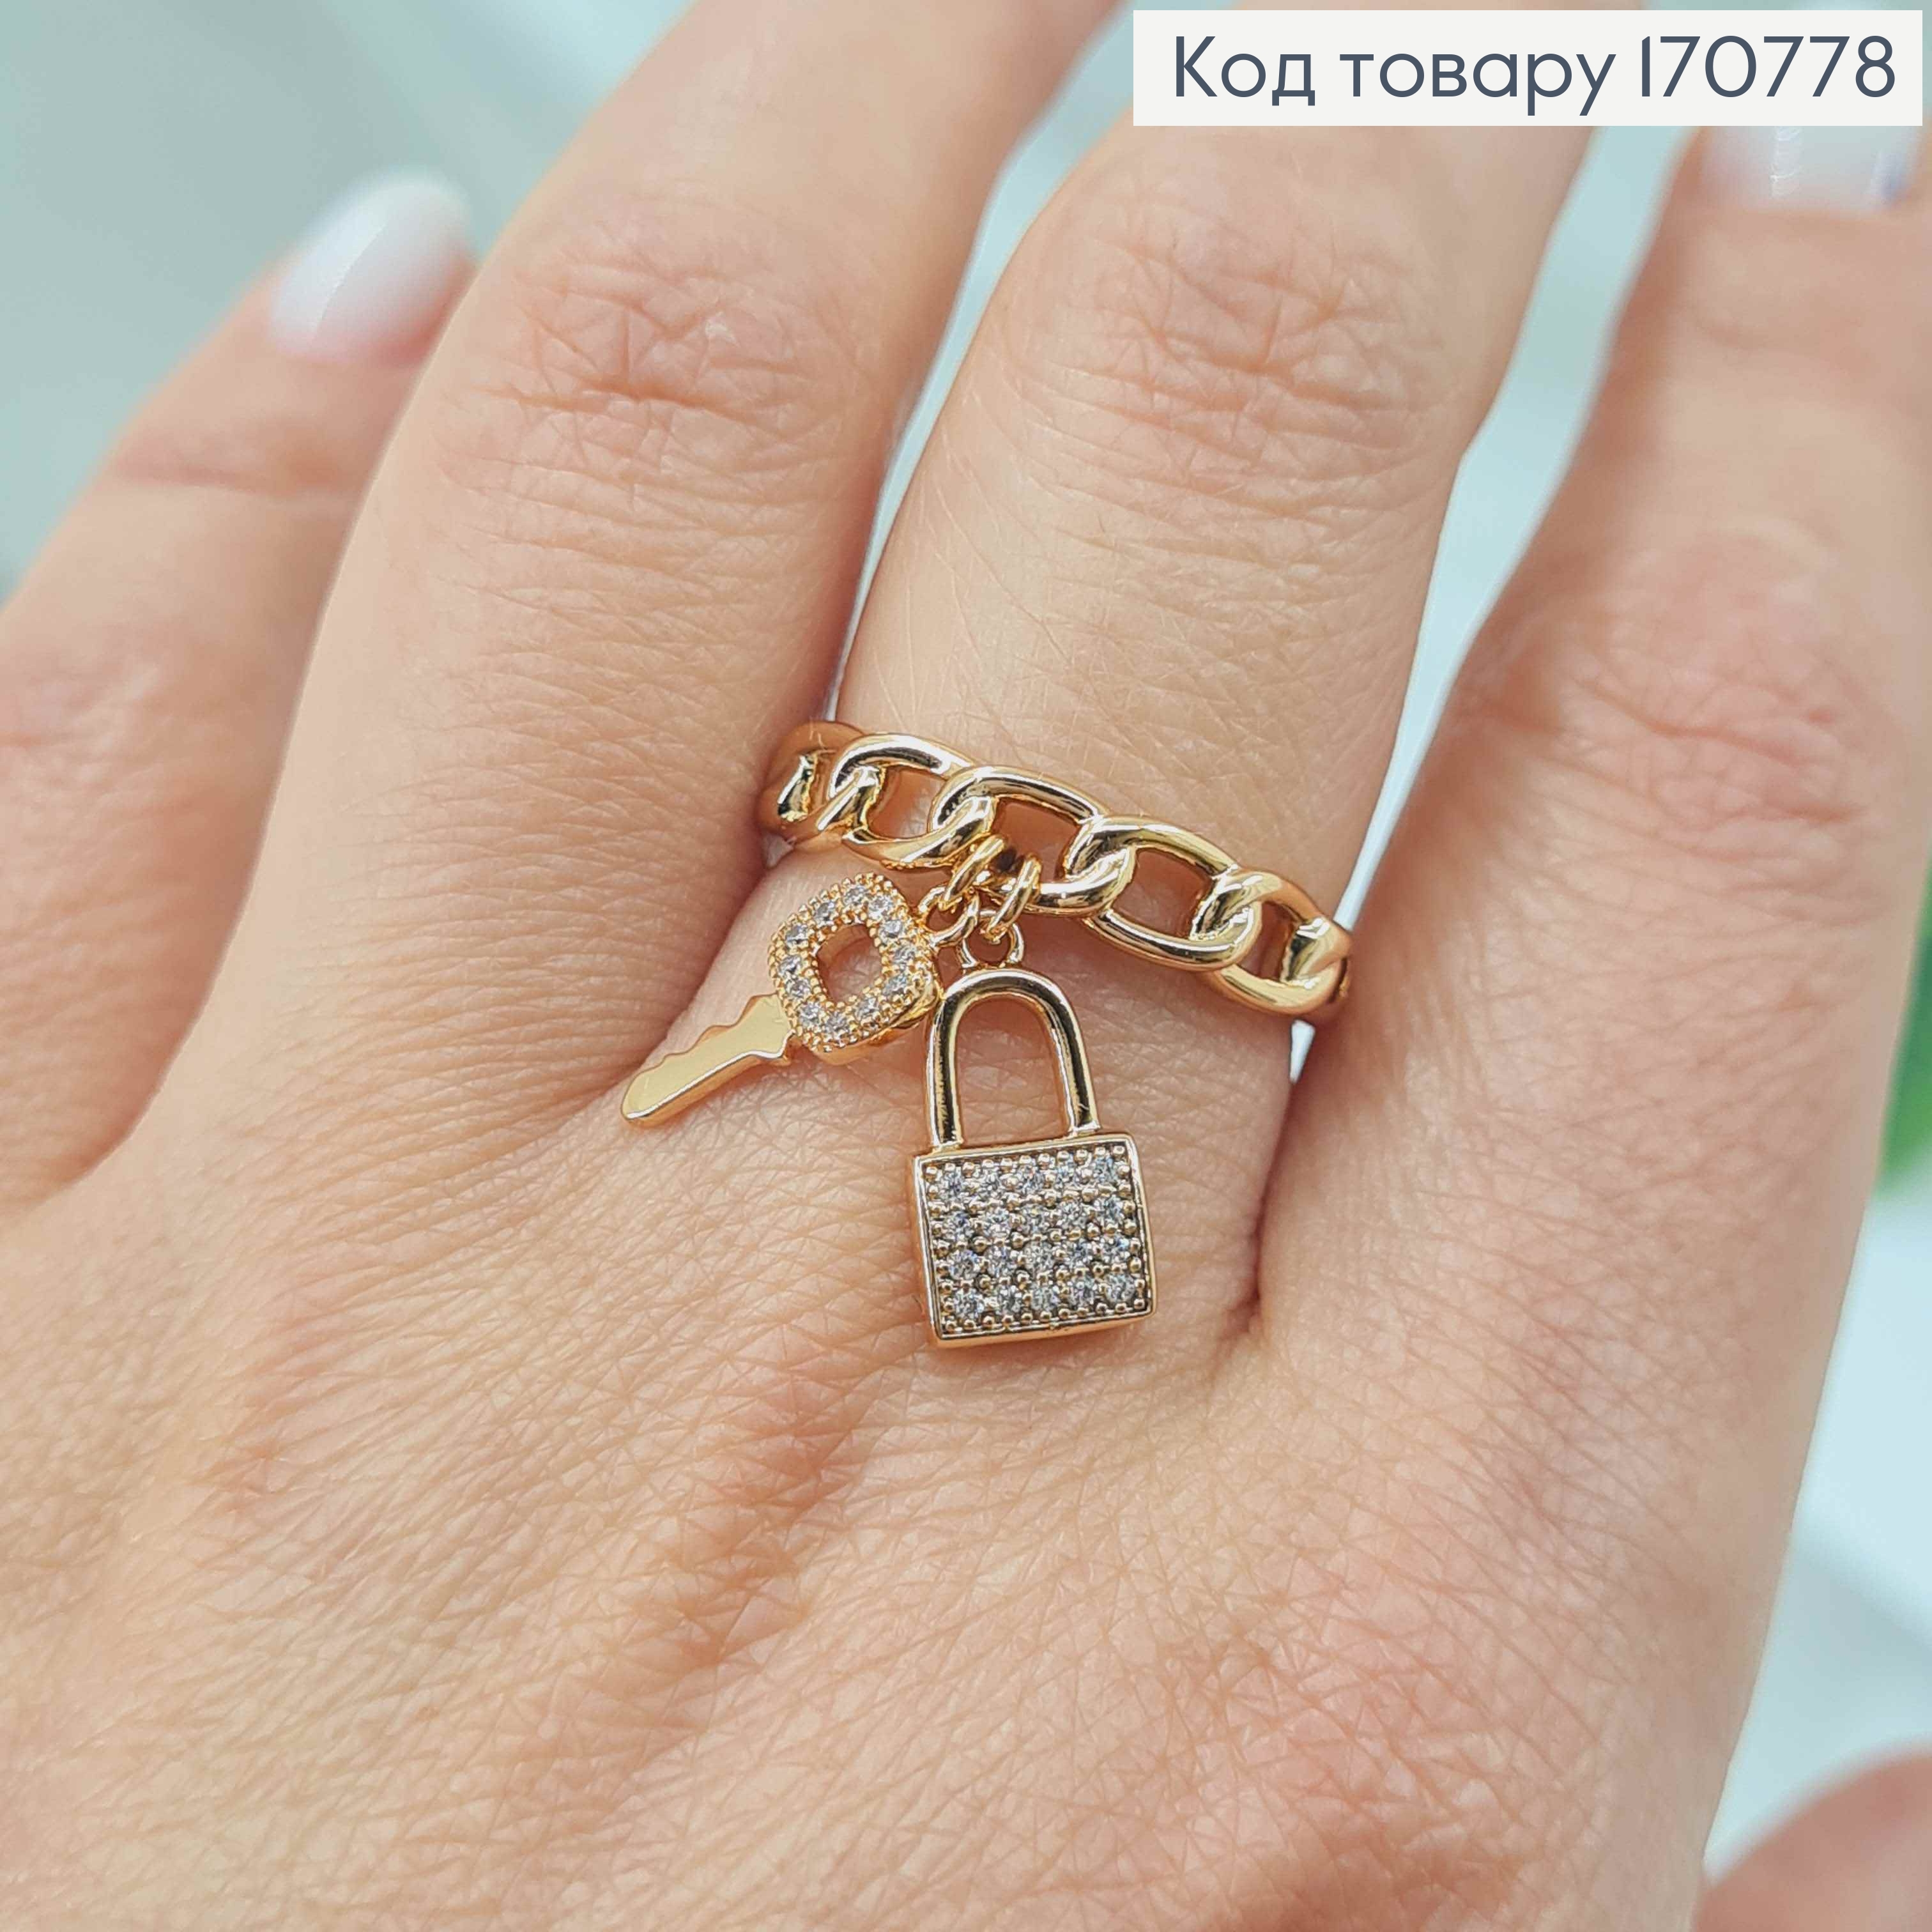 Перстень Ланцюжок з підвісочками замочком та ключиком, Xuping 18K 170778 фото 2